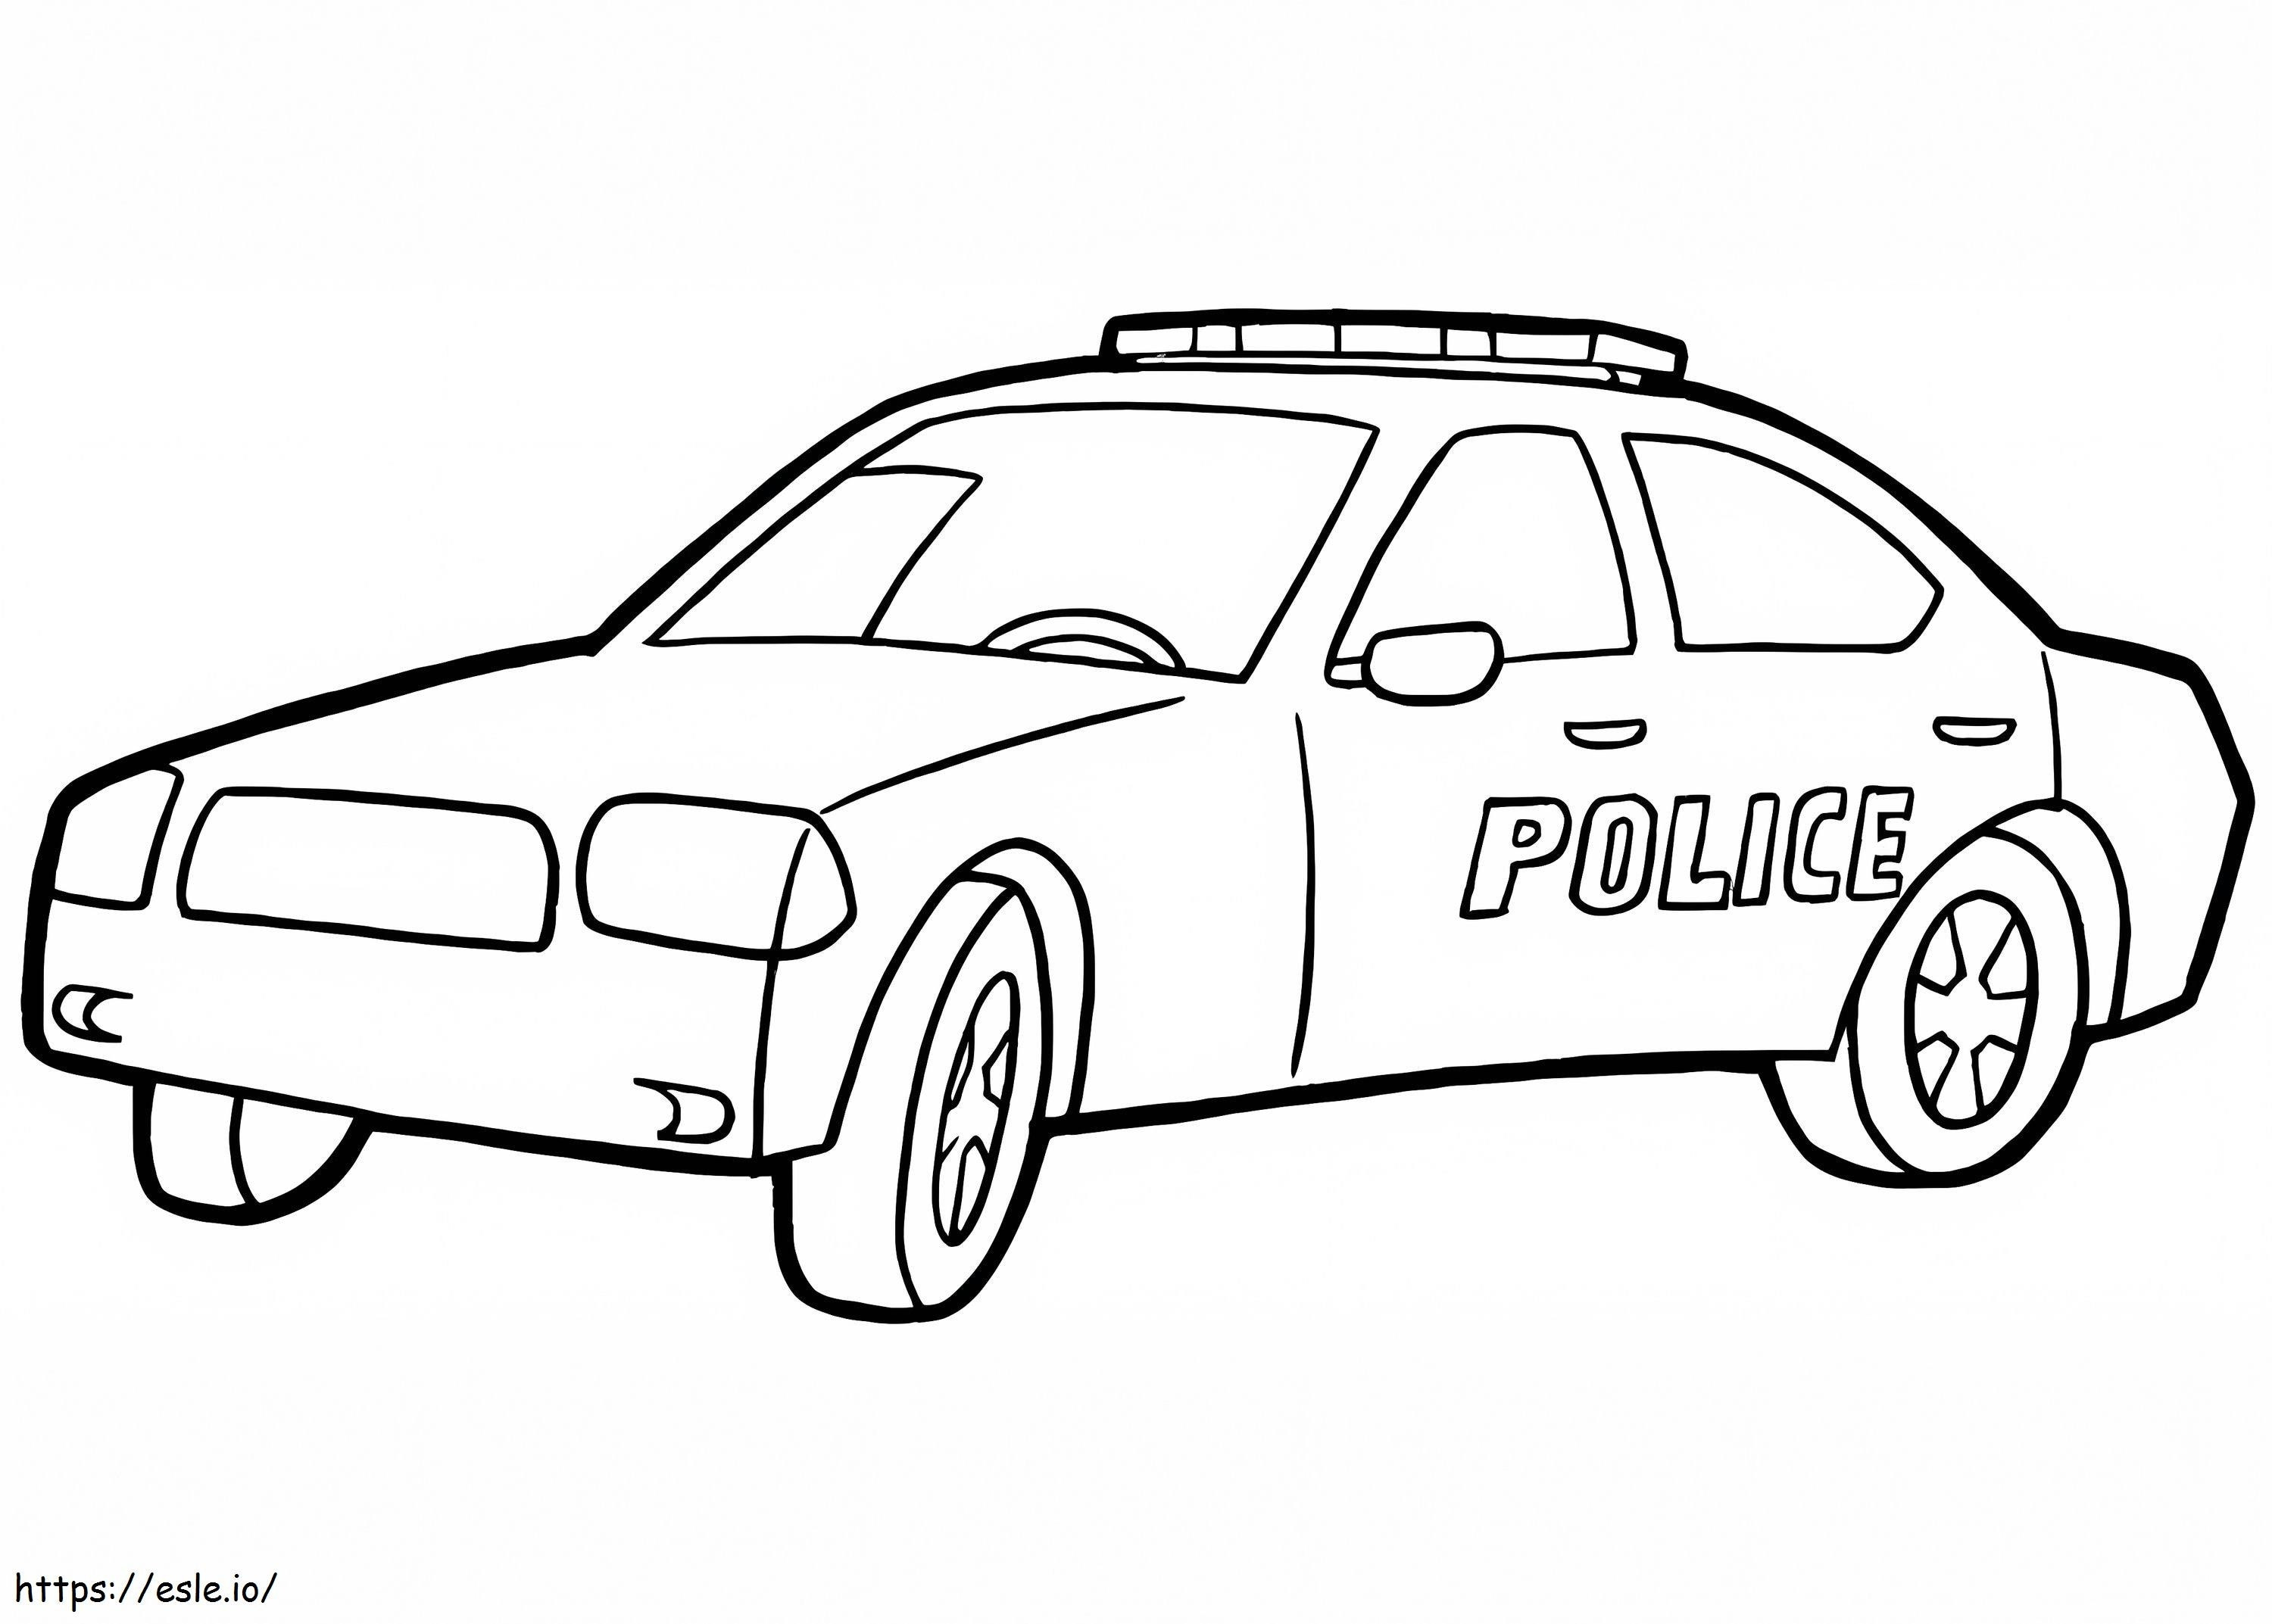 Politiewagen 18 kleurplaat kleurplaat